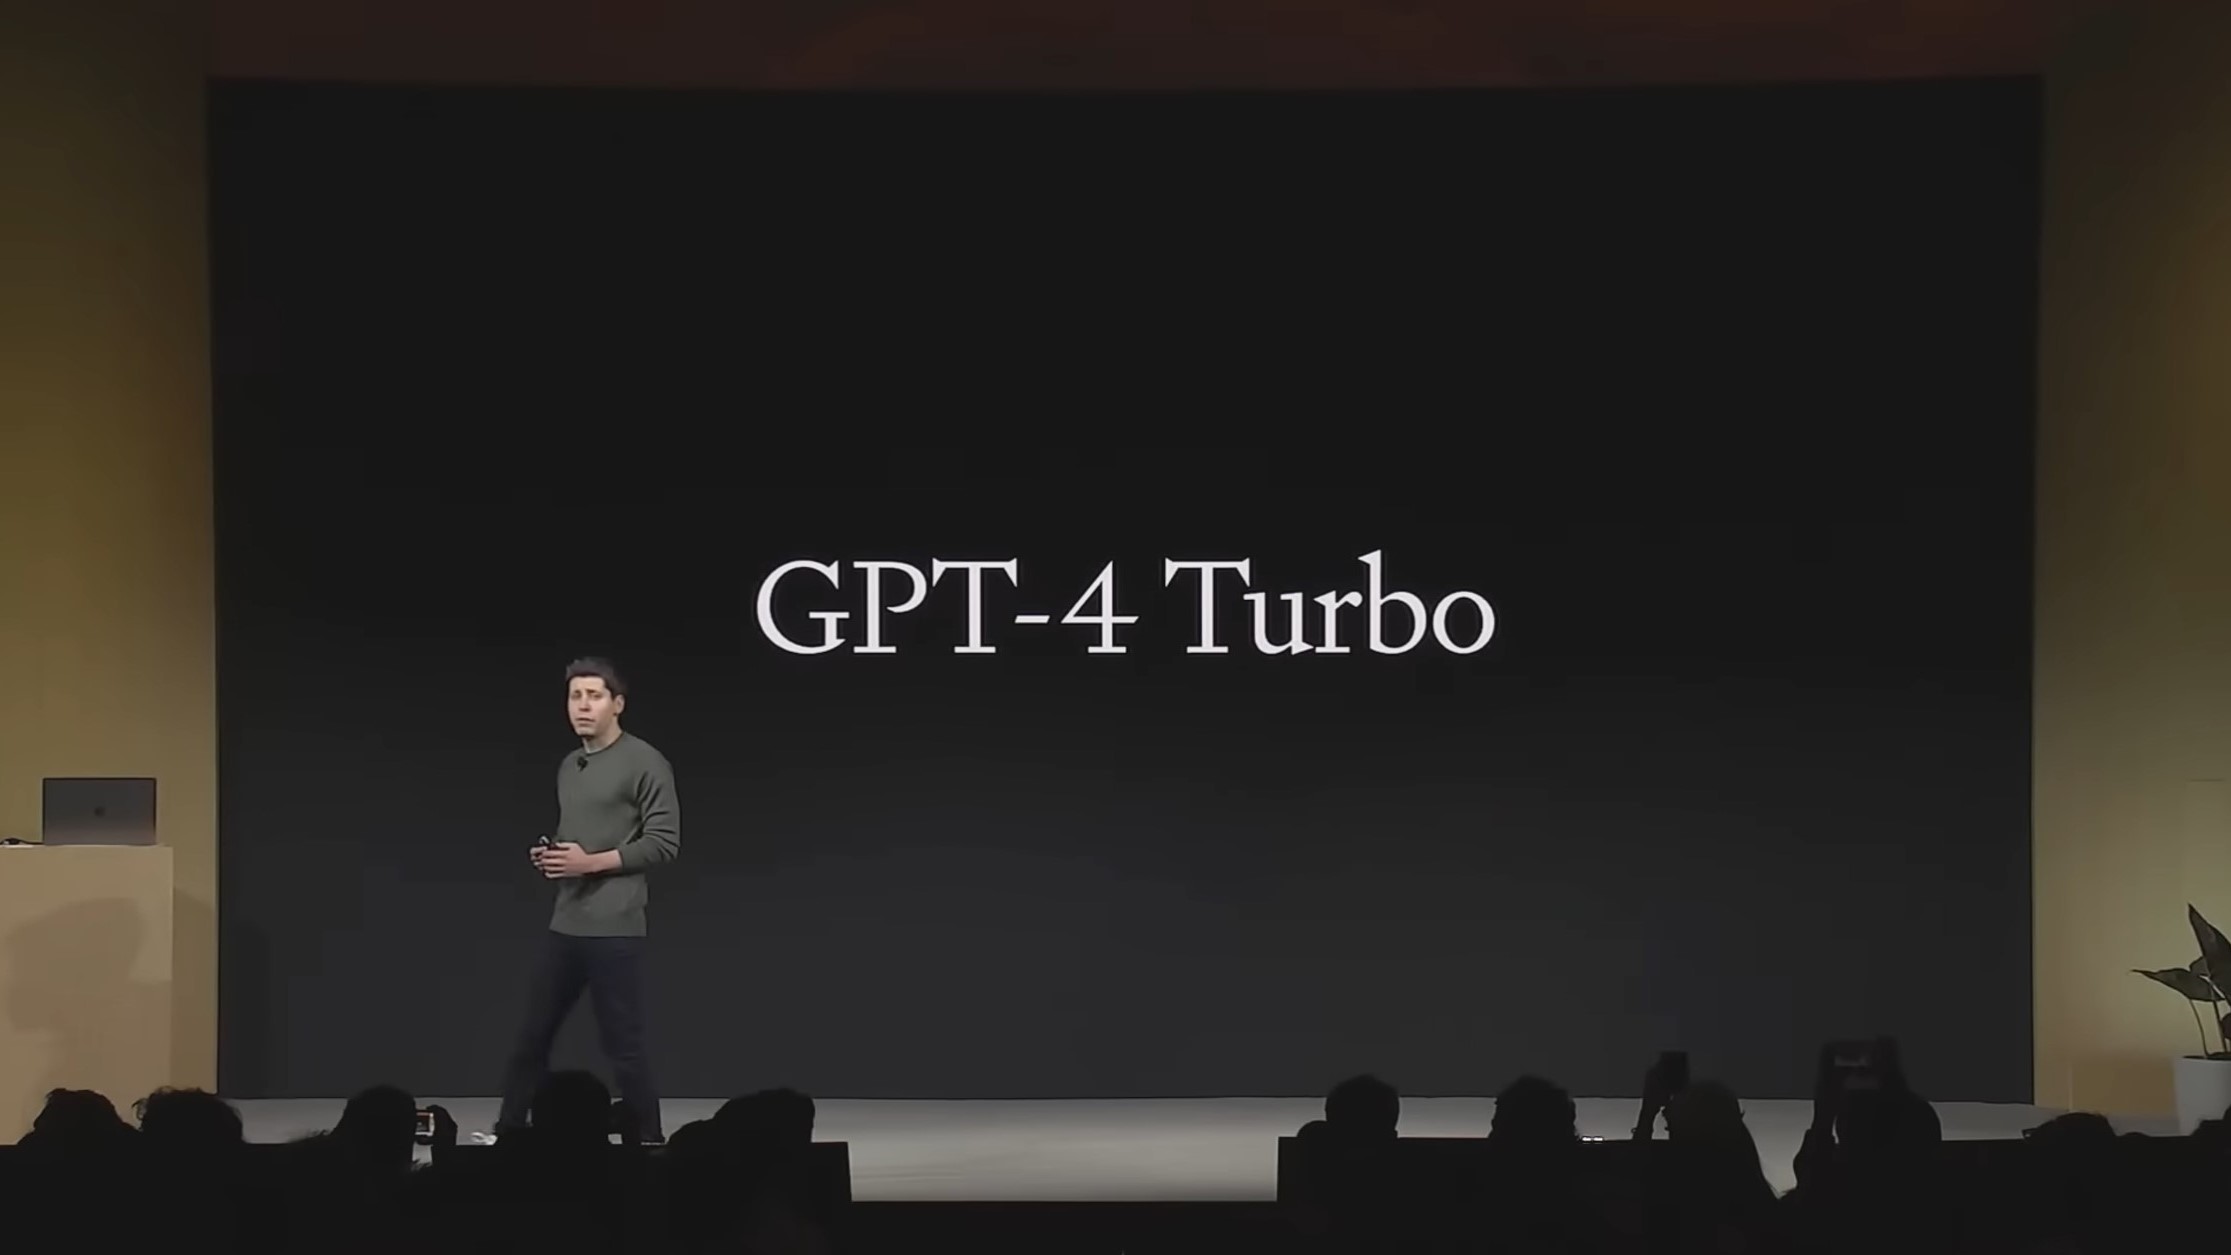 O que é GPT-4 Turbo? Novos recursos, data de lançamento, preços explicados  - RafaS GeeK